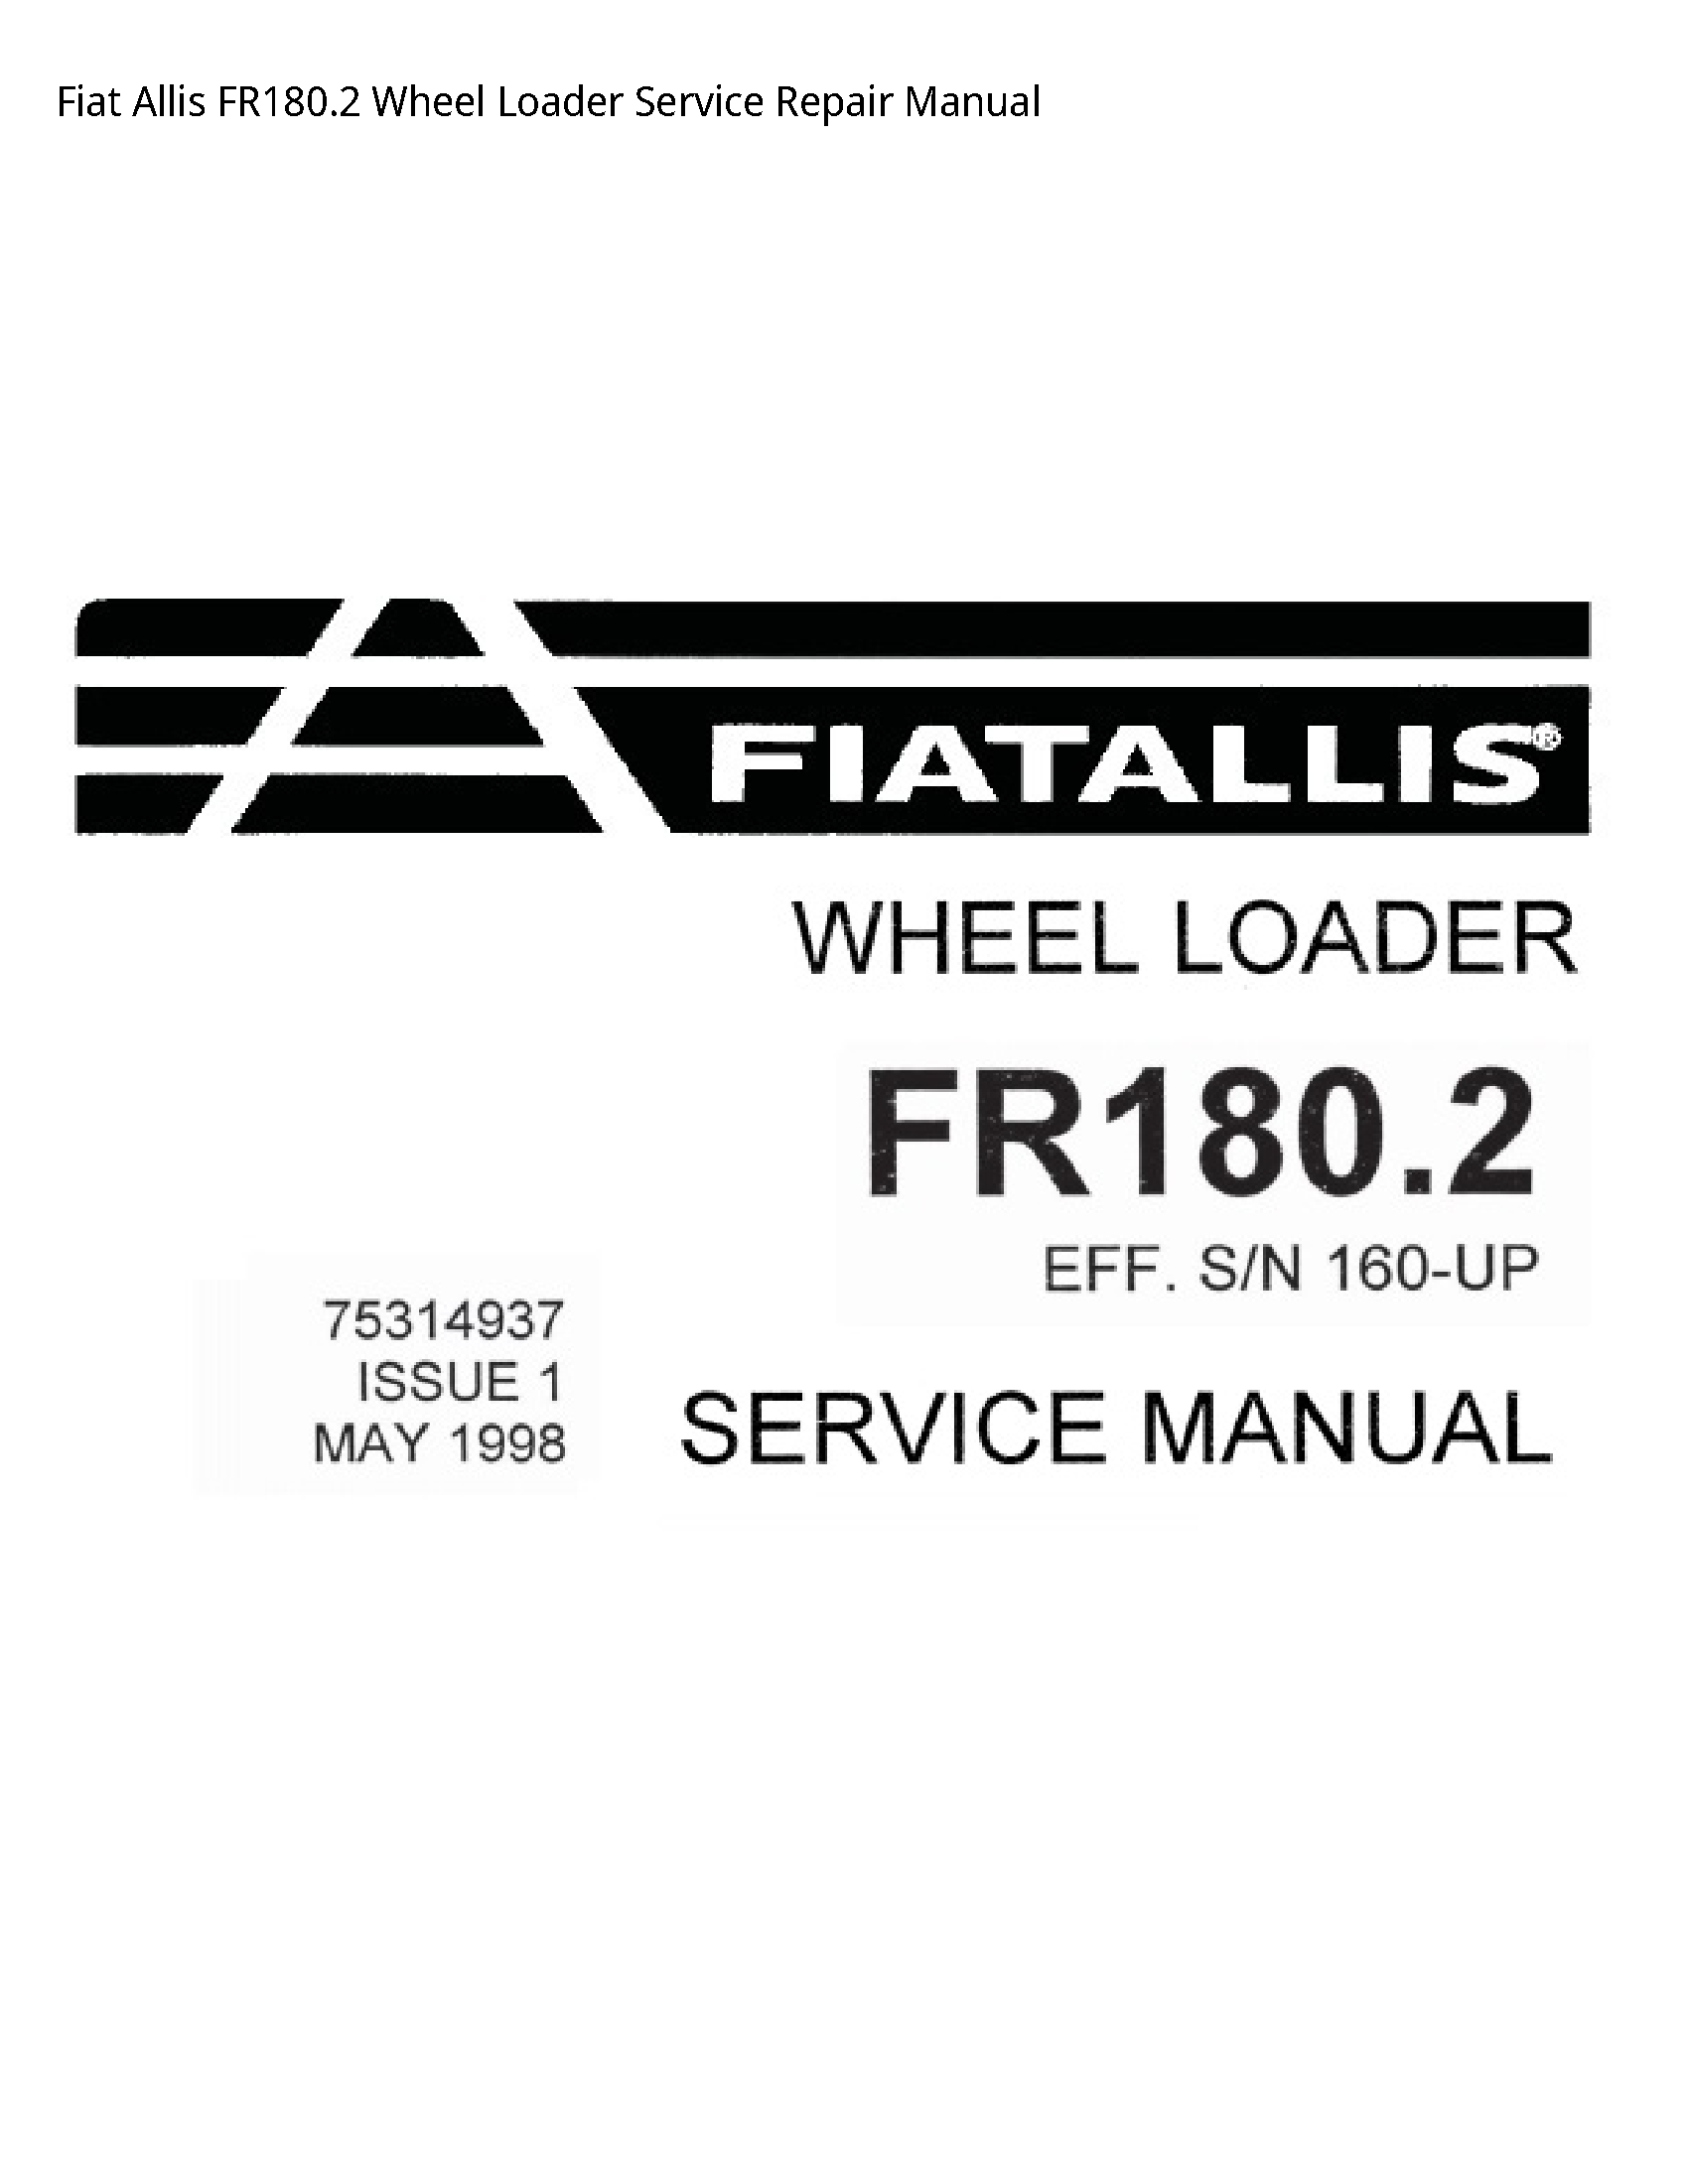 Fiat Allis FR180.2 Wheel Loader manual